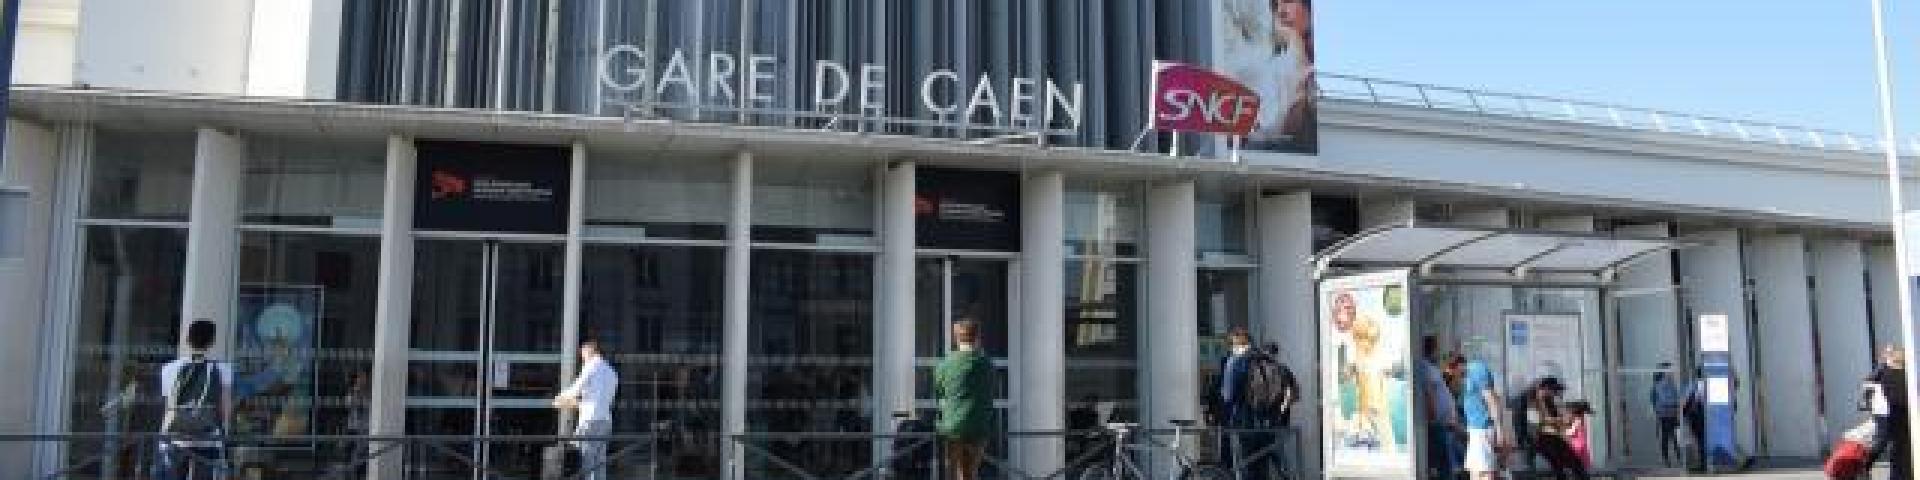 Gare de Caen - Bandeau - partenaire - ESITC Caen